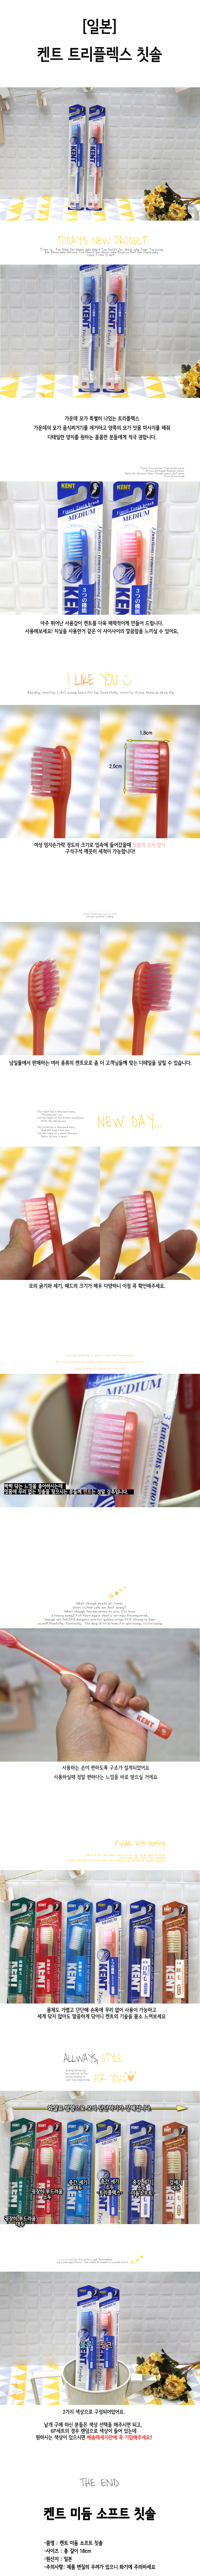 일본 켄트 칫솔 트리플렉스 KNT-4211 6p set 칫솔 일반칫솔 일반모칫솔 이닦기 이닦는칫솔 치아칫솔 양치질칫솔 치아닦기 치아닦는칫솔 양치칫솔